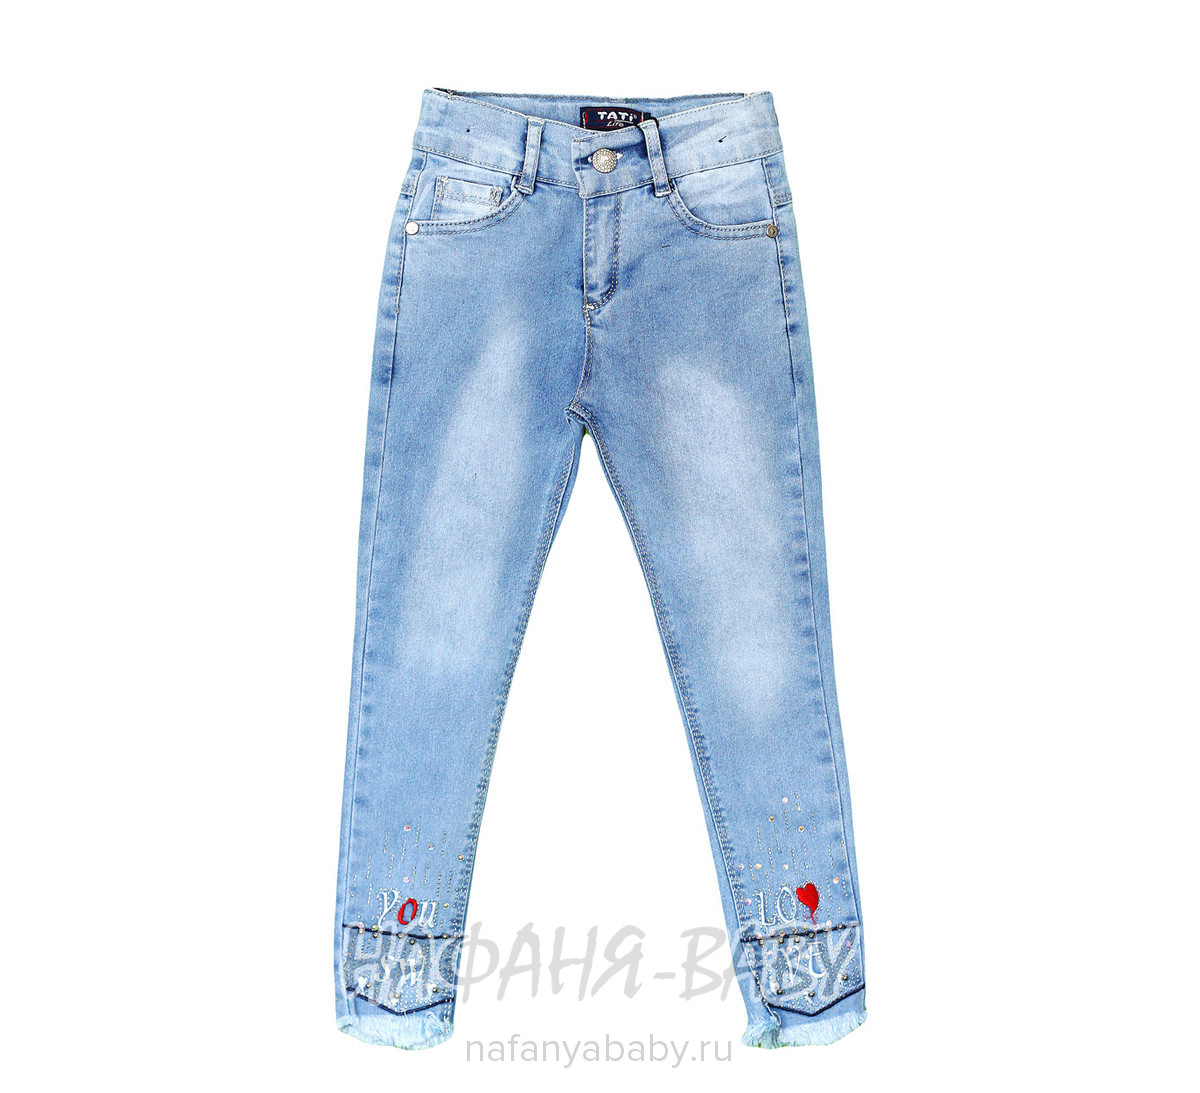 Детские джинсы TATI Jeans арт: 3054, 1-4 года, 5-9 лет, оптом Турция